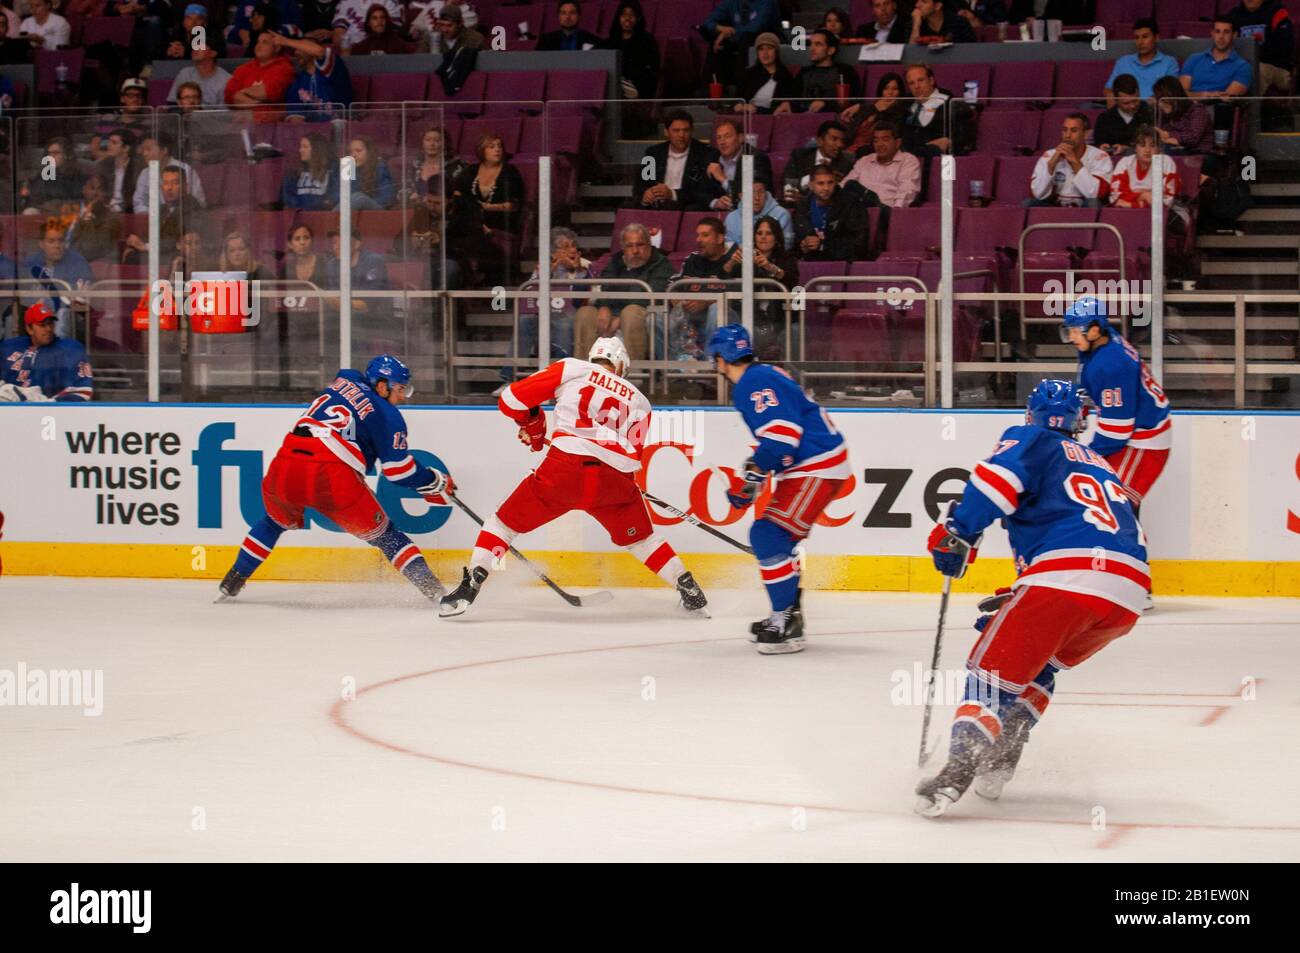 Eishockeyliga NHL Match Rangers bei MSG. Wenn Sie über die großartigen Sportstätten sprechen, sollte Madison Square Garden ganz oben auf der Liste stehen. H Stockfoto